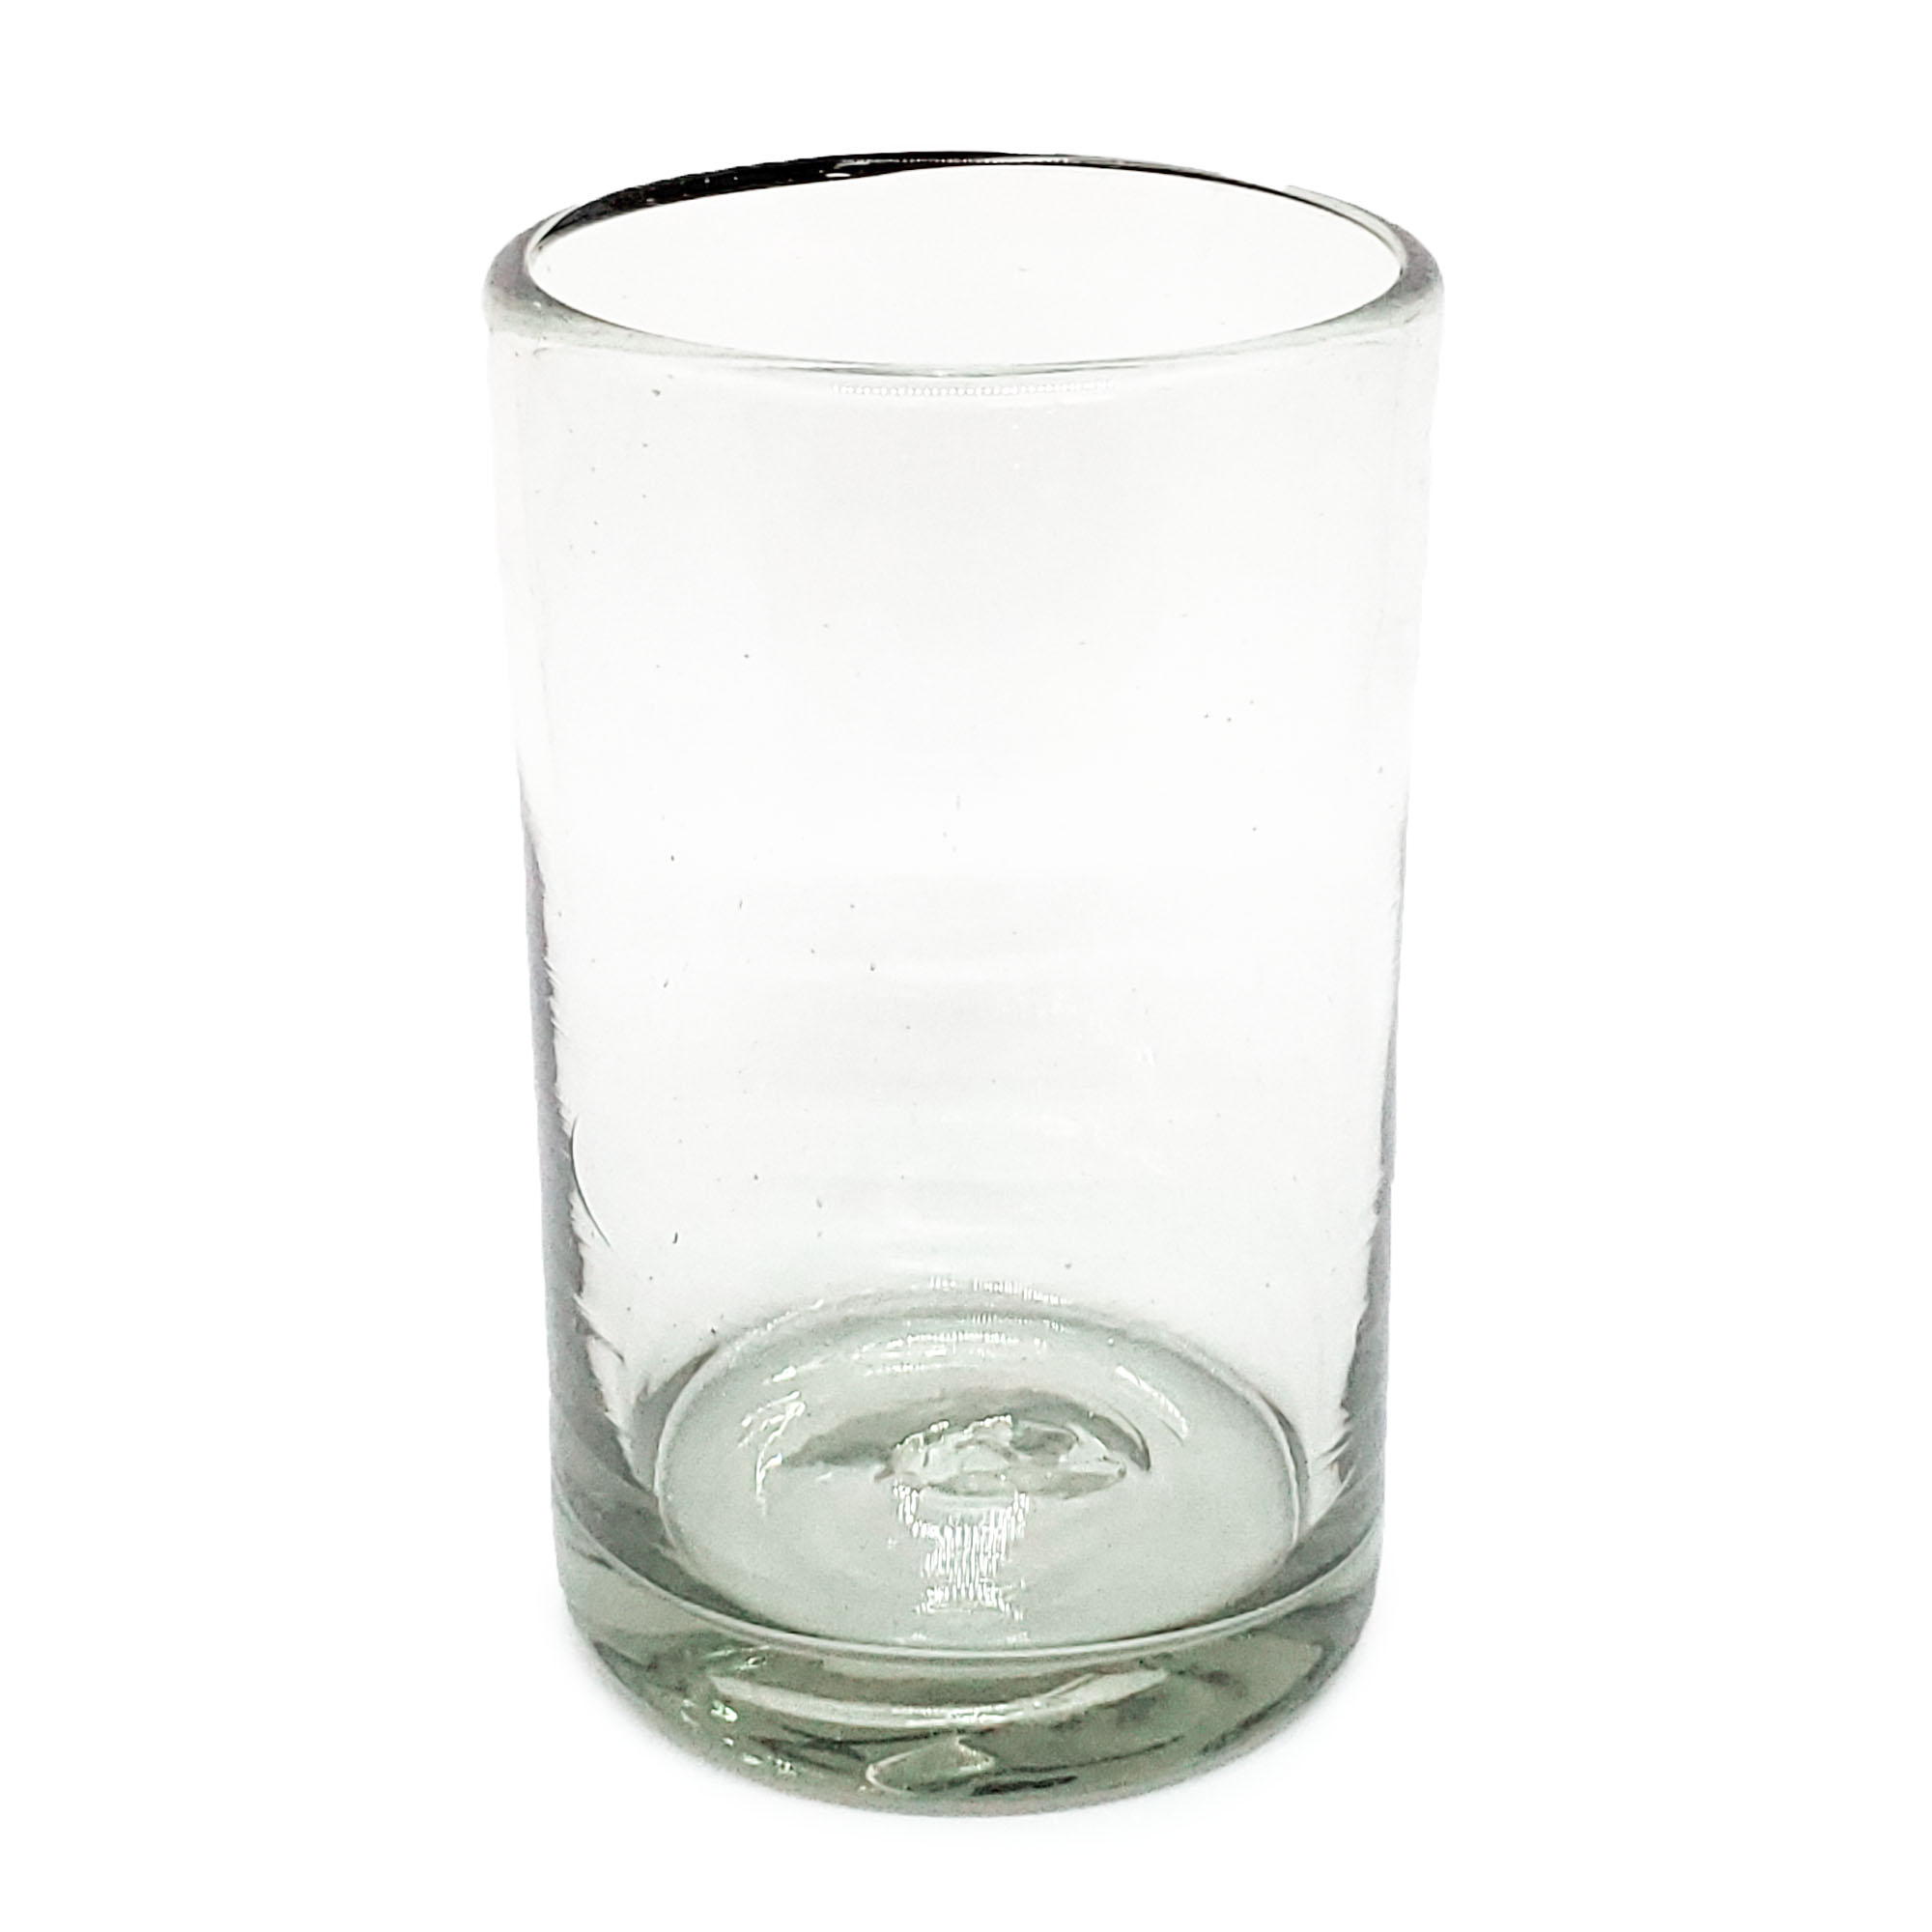 VIDRIO SOPLADO / Juego de 6 vasos grandes transparentes / Éstos artesanales vasos le darán un toque clásico a su bebida favorita.